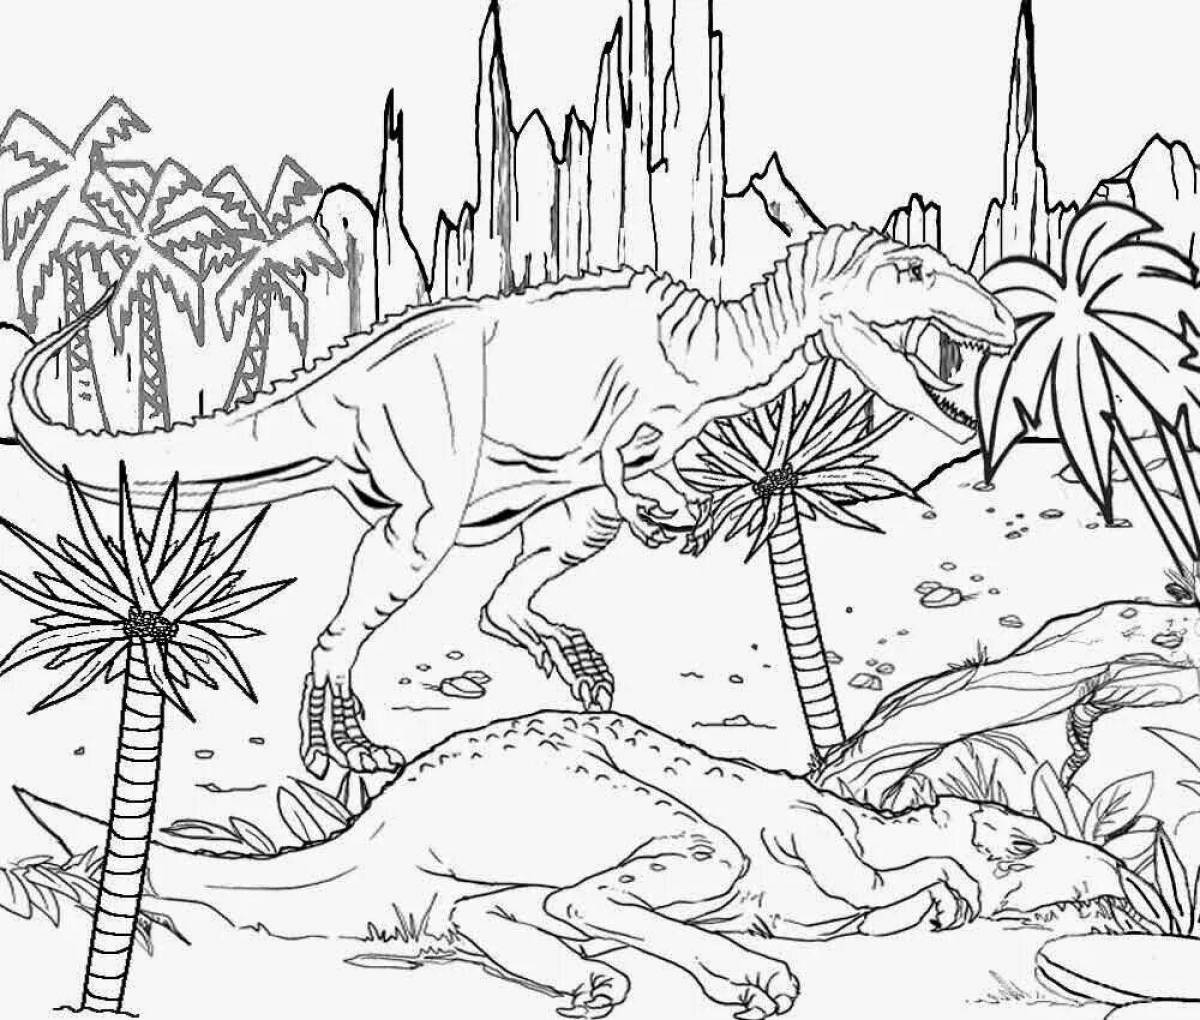 Impressive Jurassic World coloring book